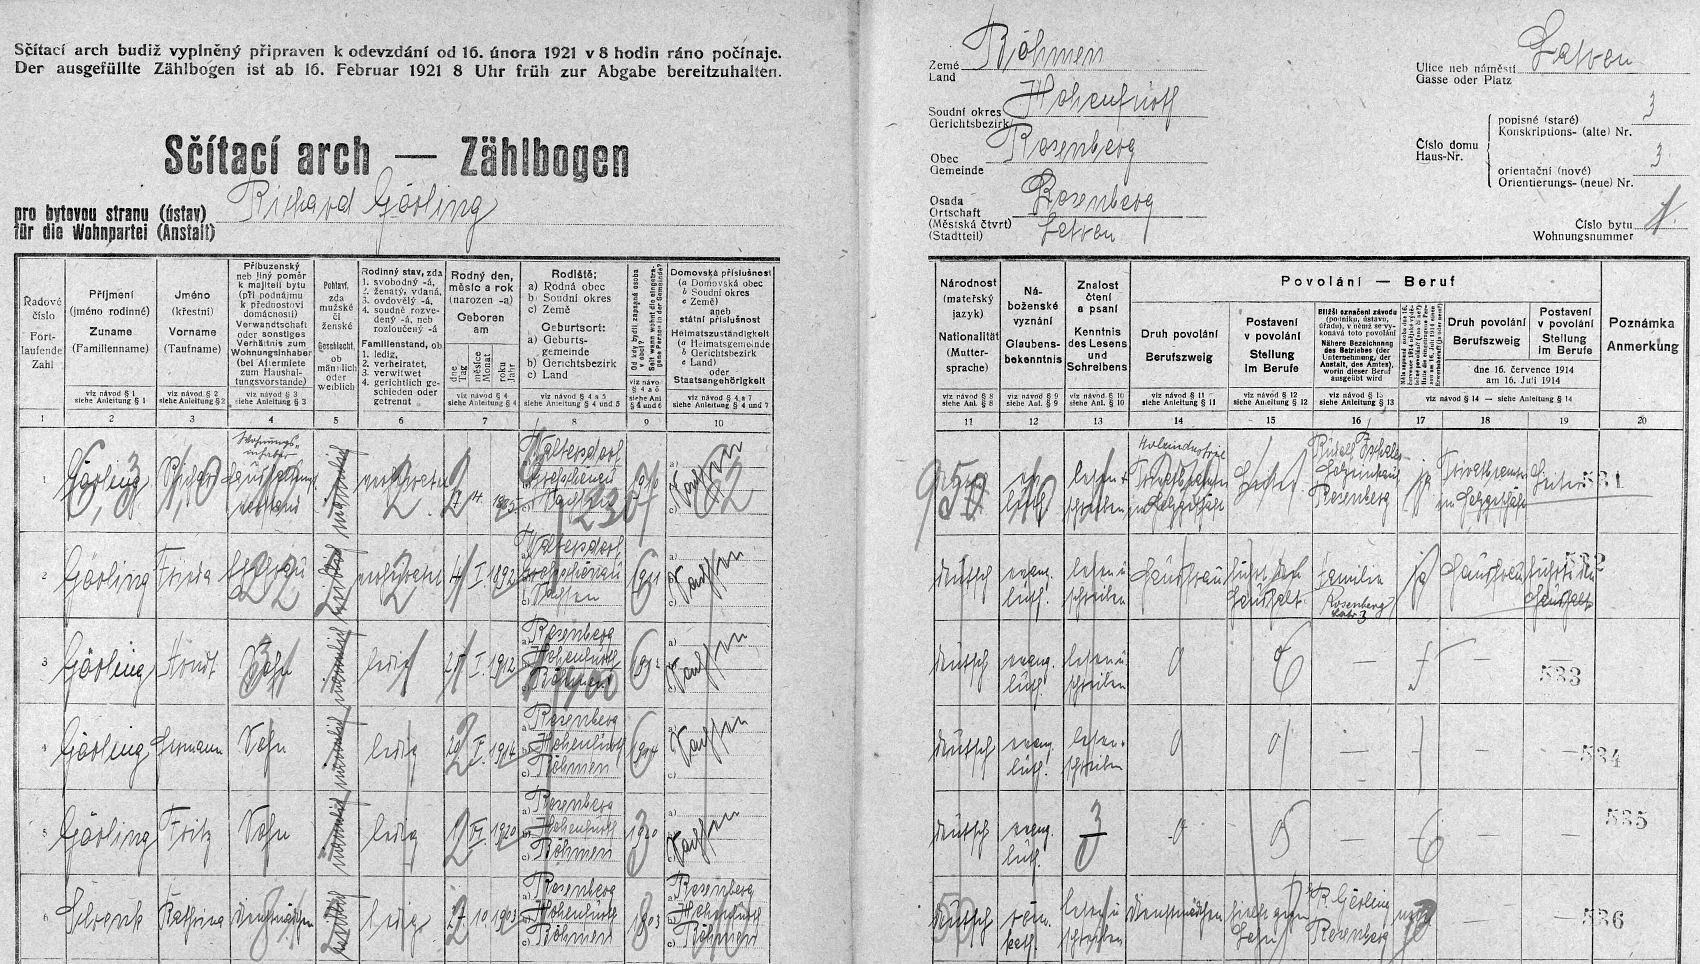 Arch sčítání lidu z roku 1921 pro byt č. 1 ve stavení čp. 3 na Latráně v Rožmberku nad Vltavou s rodinou Görlingovou i s ním